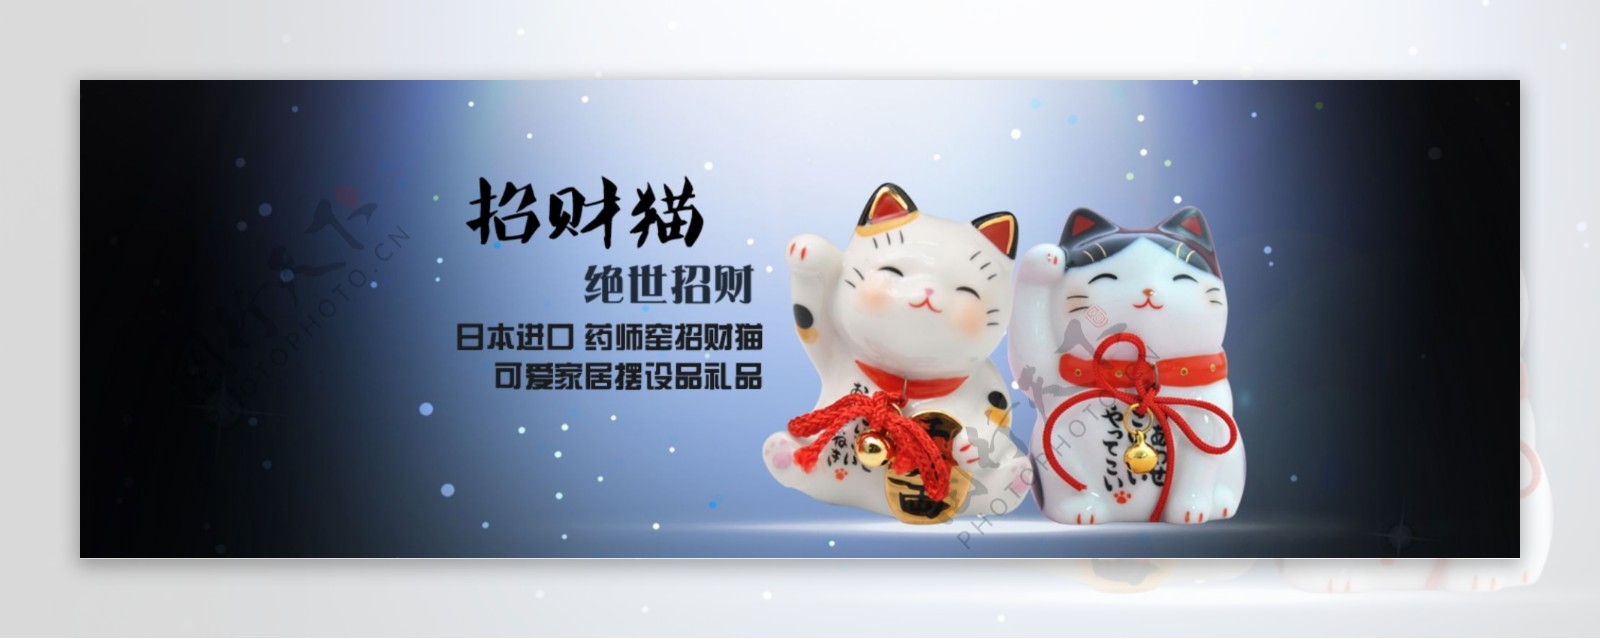 陶瓷招财猫海报